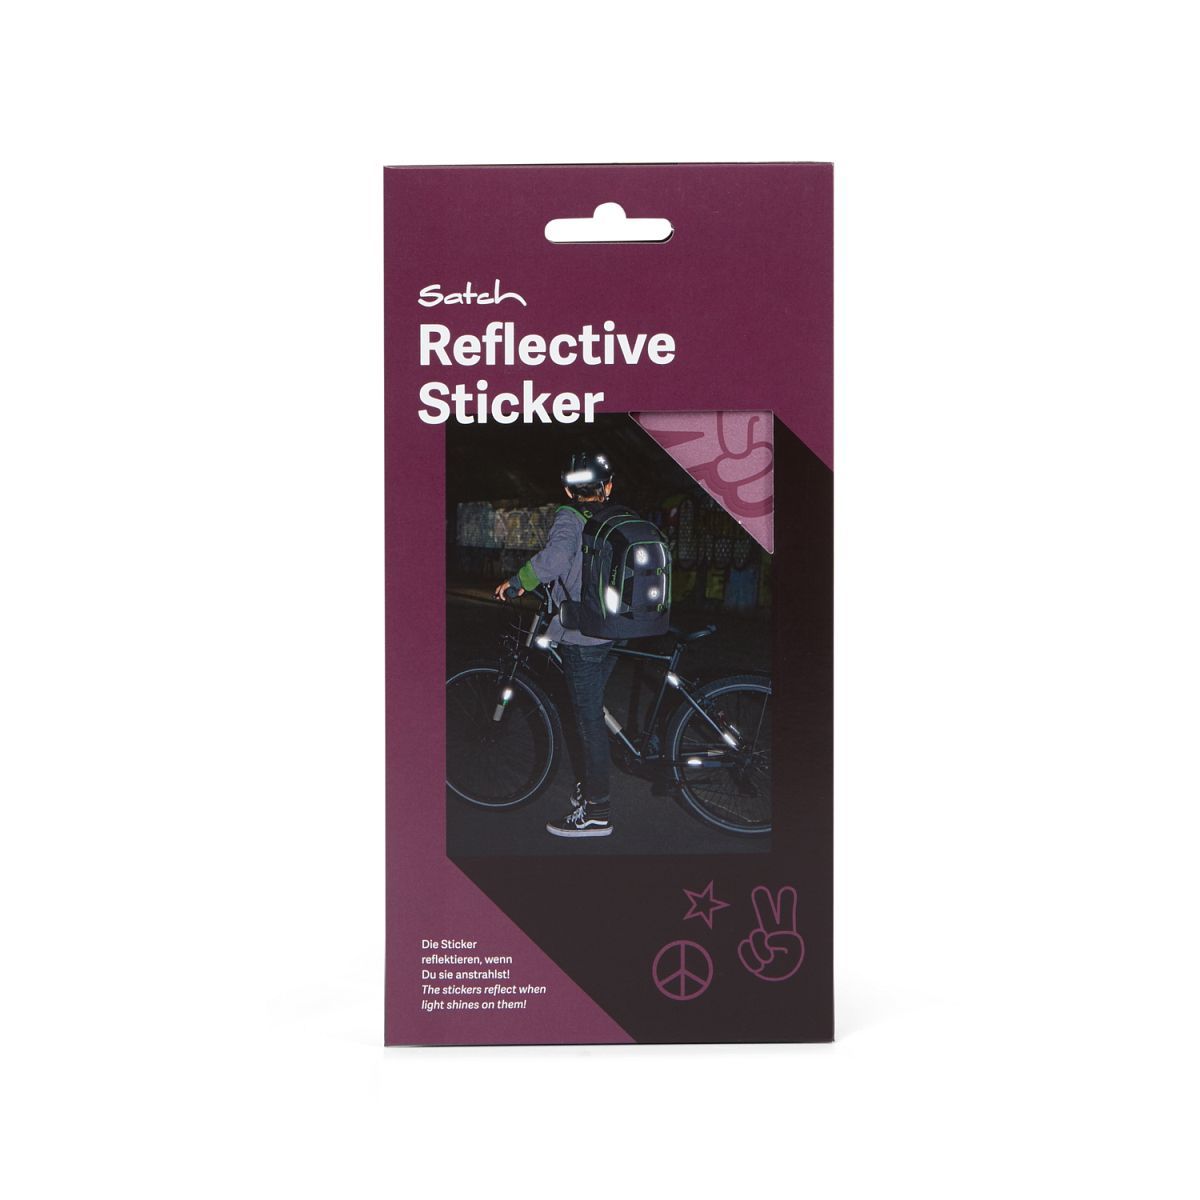 Satch Reflective Sticker violett Verpackungsansicht